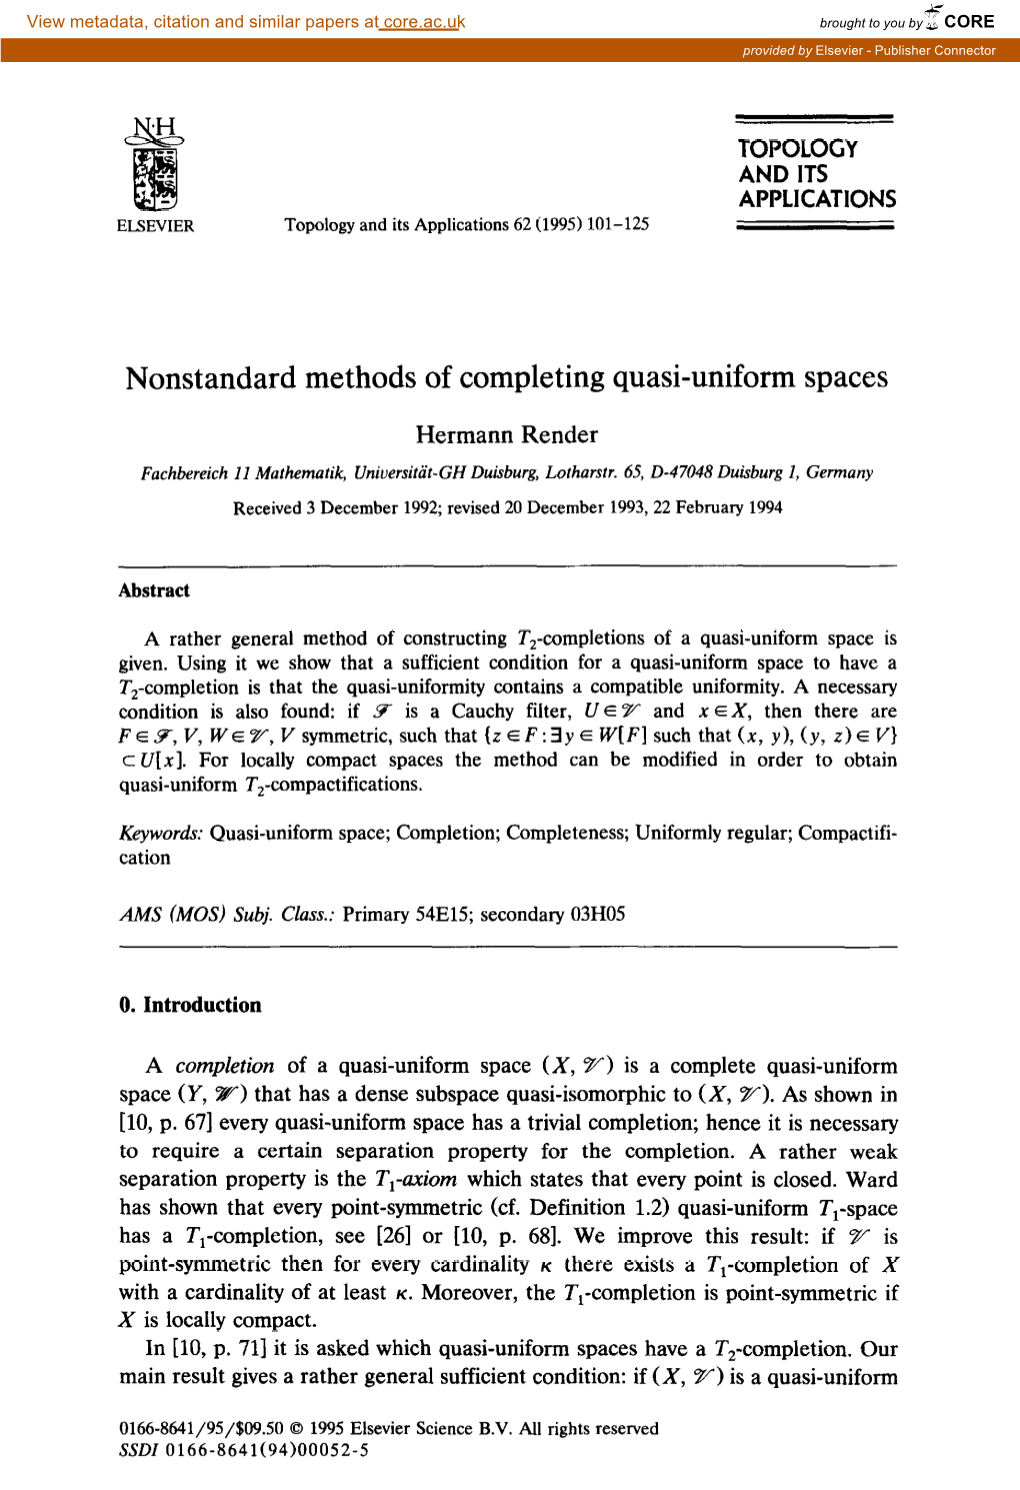 Nonstandard Methods of Completing Quasi-Uniform Spaces